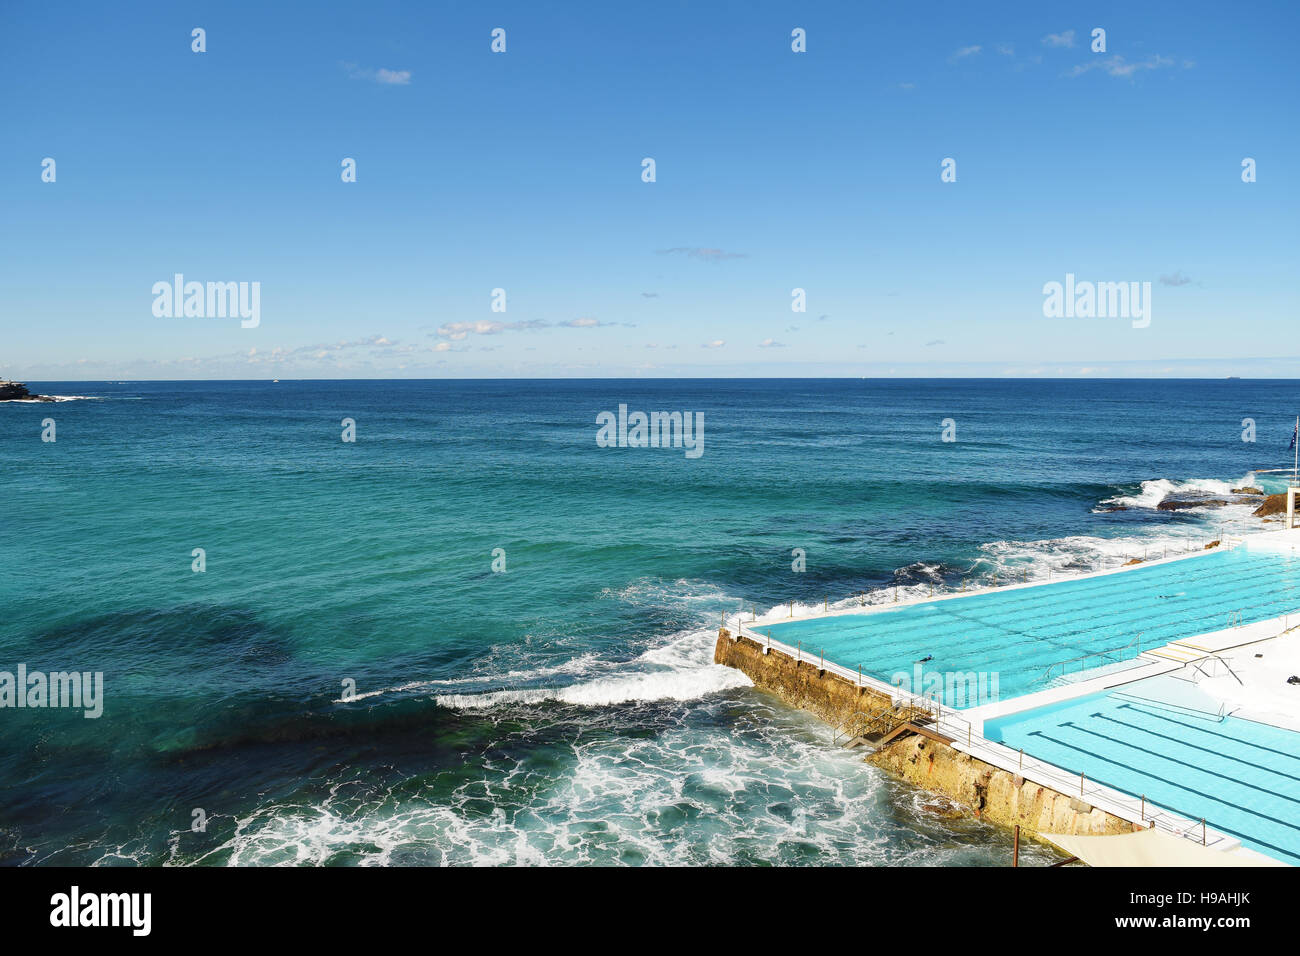 Piscine extérieure à Bondi Beach, Sydney, Australie. Banque D'Images